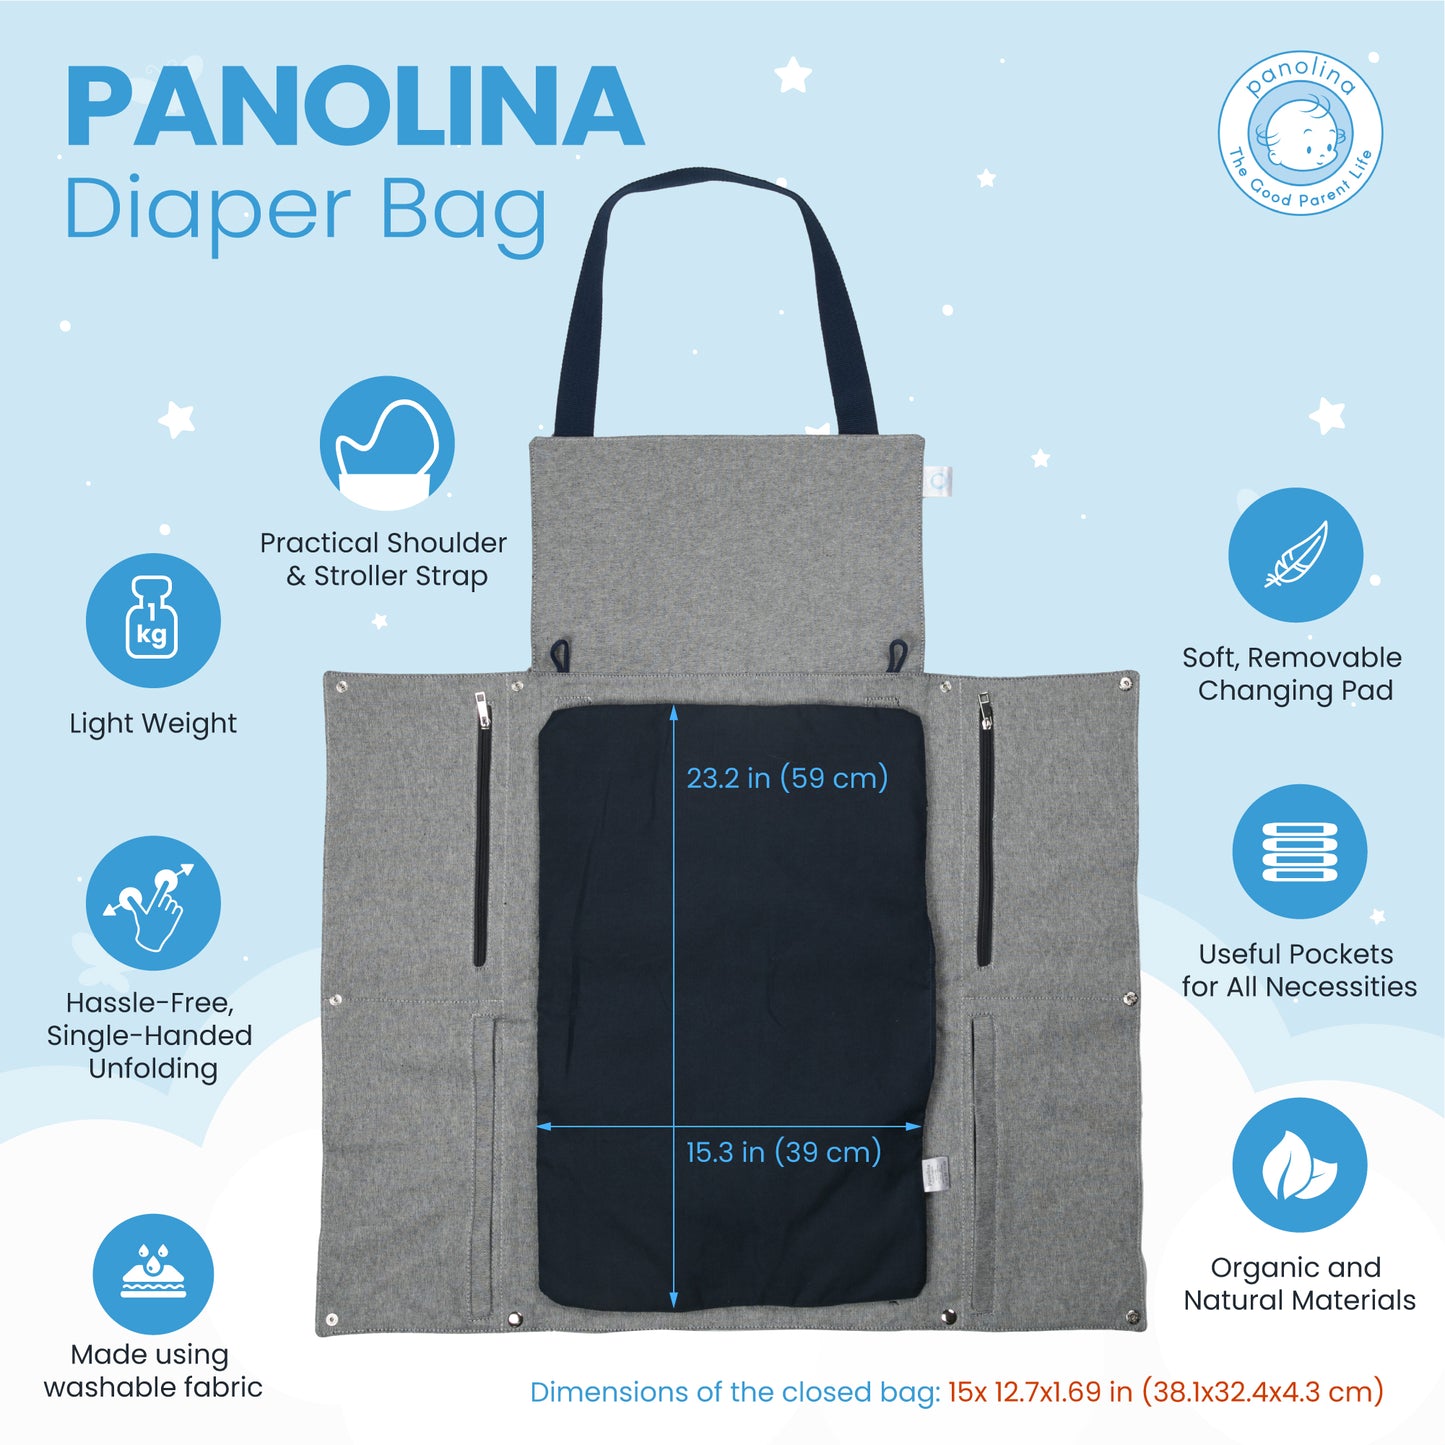 Panolina Diaper Bag